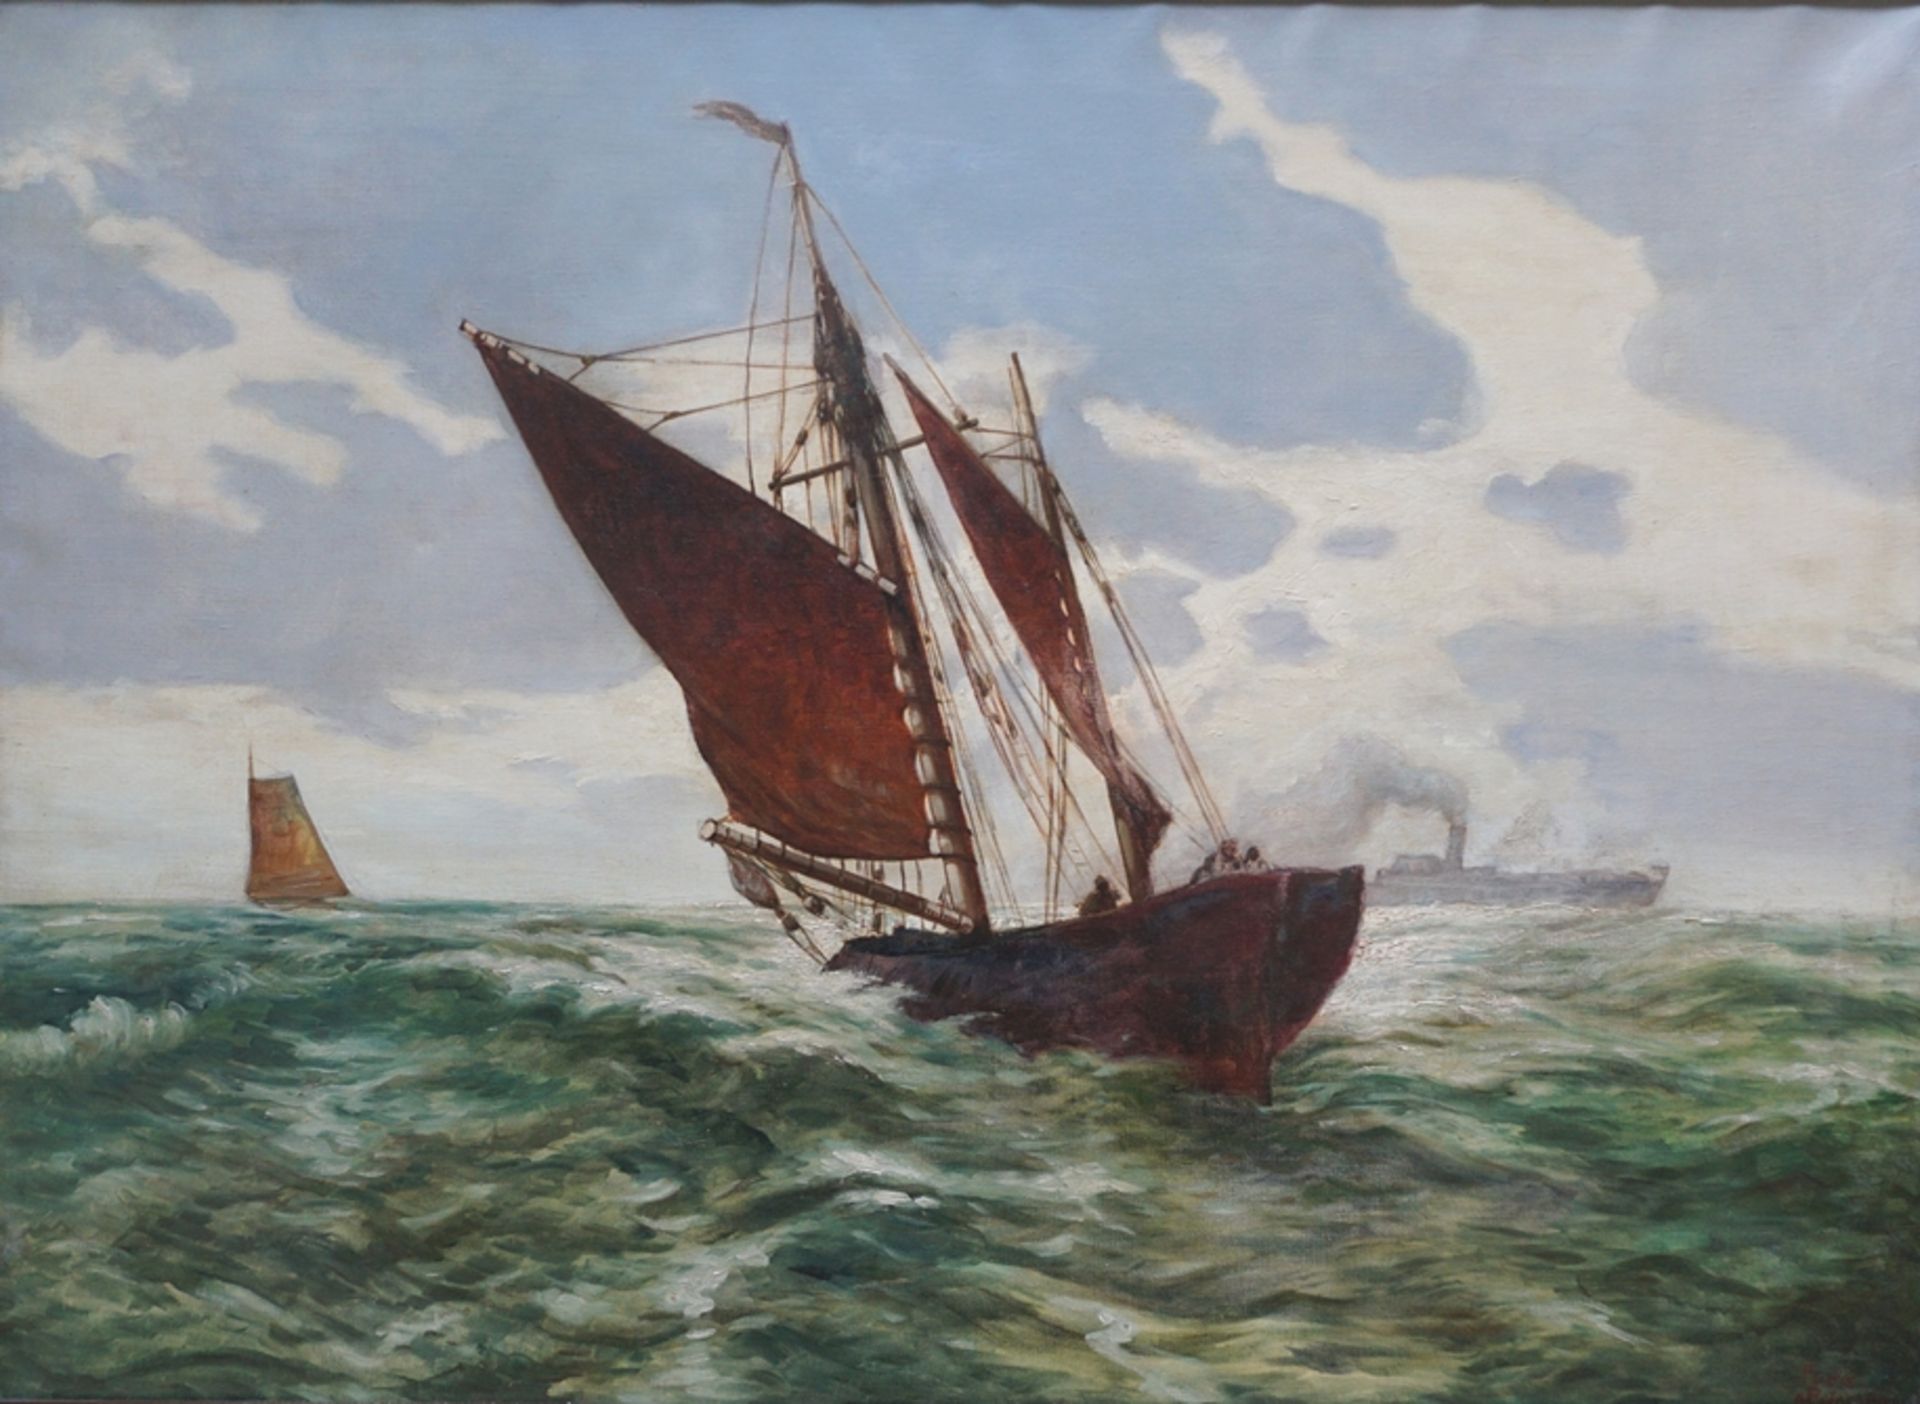 signiert "Fuchs", cop. nach (Heinrich?) Petersen, "Segelboot", 1920/30er Jahre, Öl/Lwd.